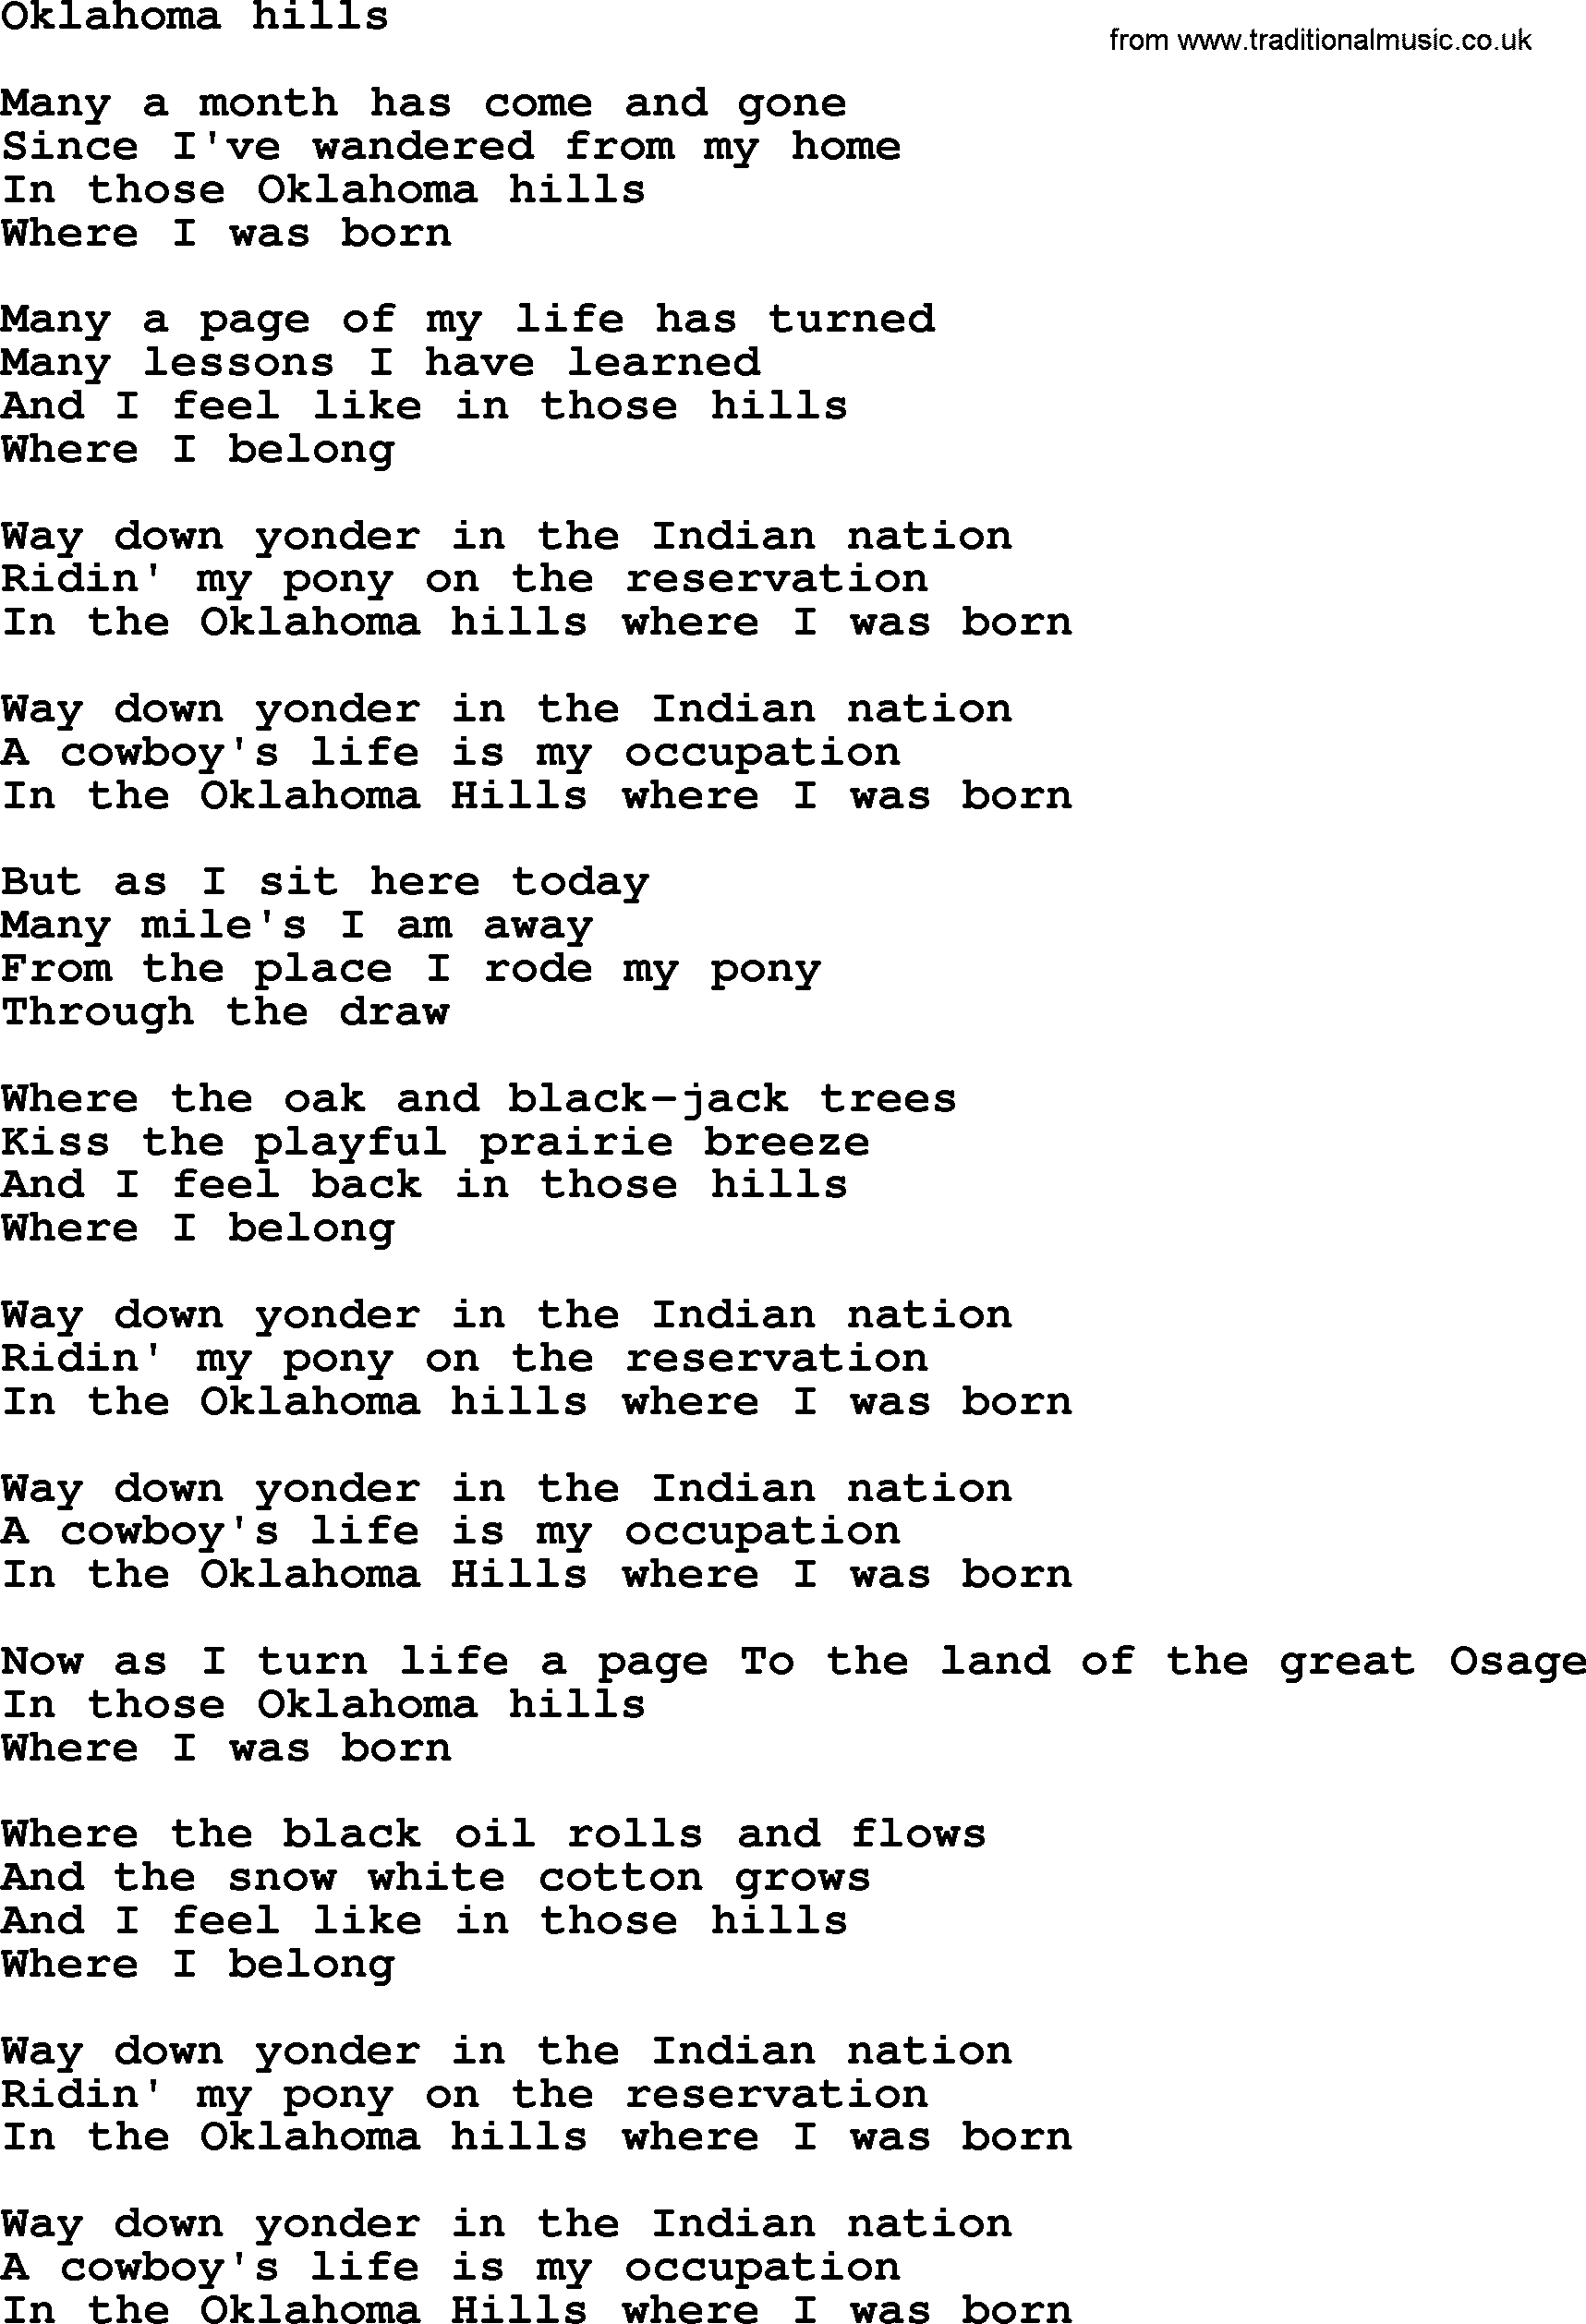 Bruce Springsteen song: Oklahoma Hills lyrics